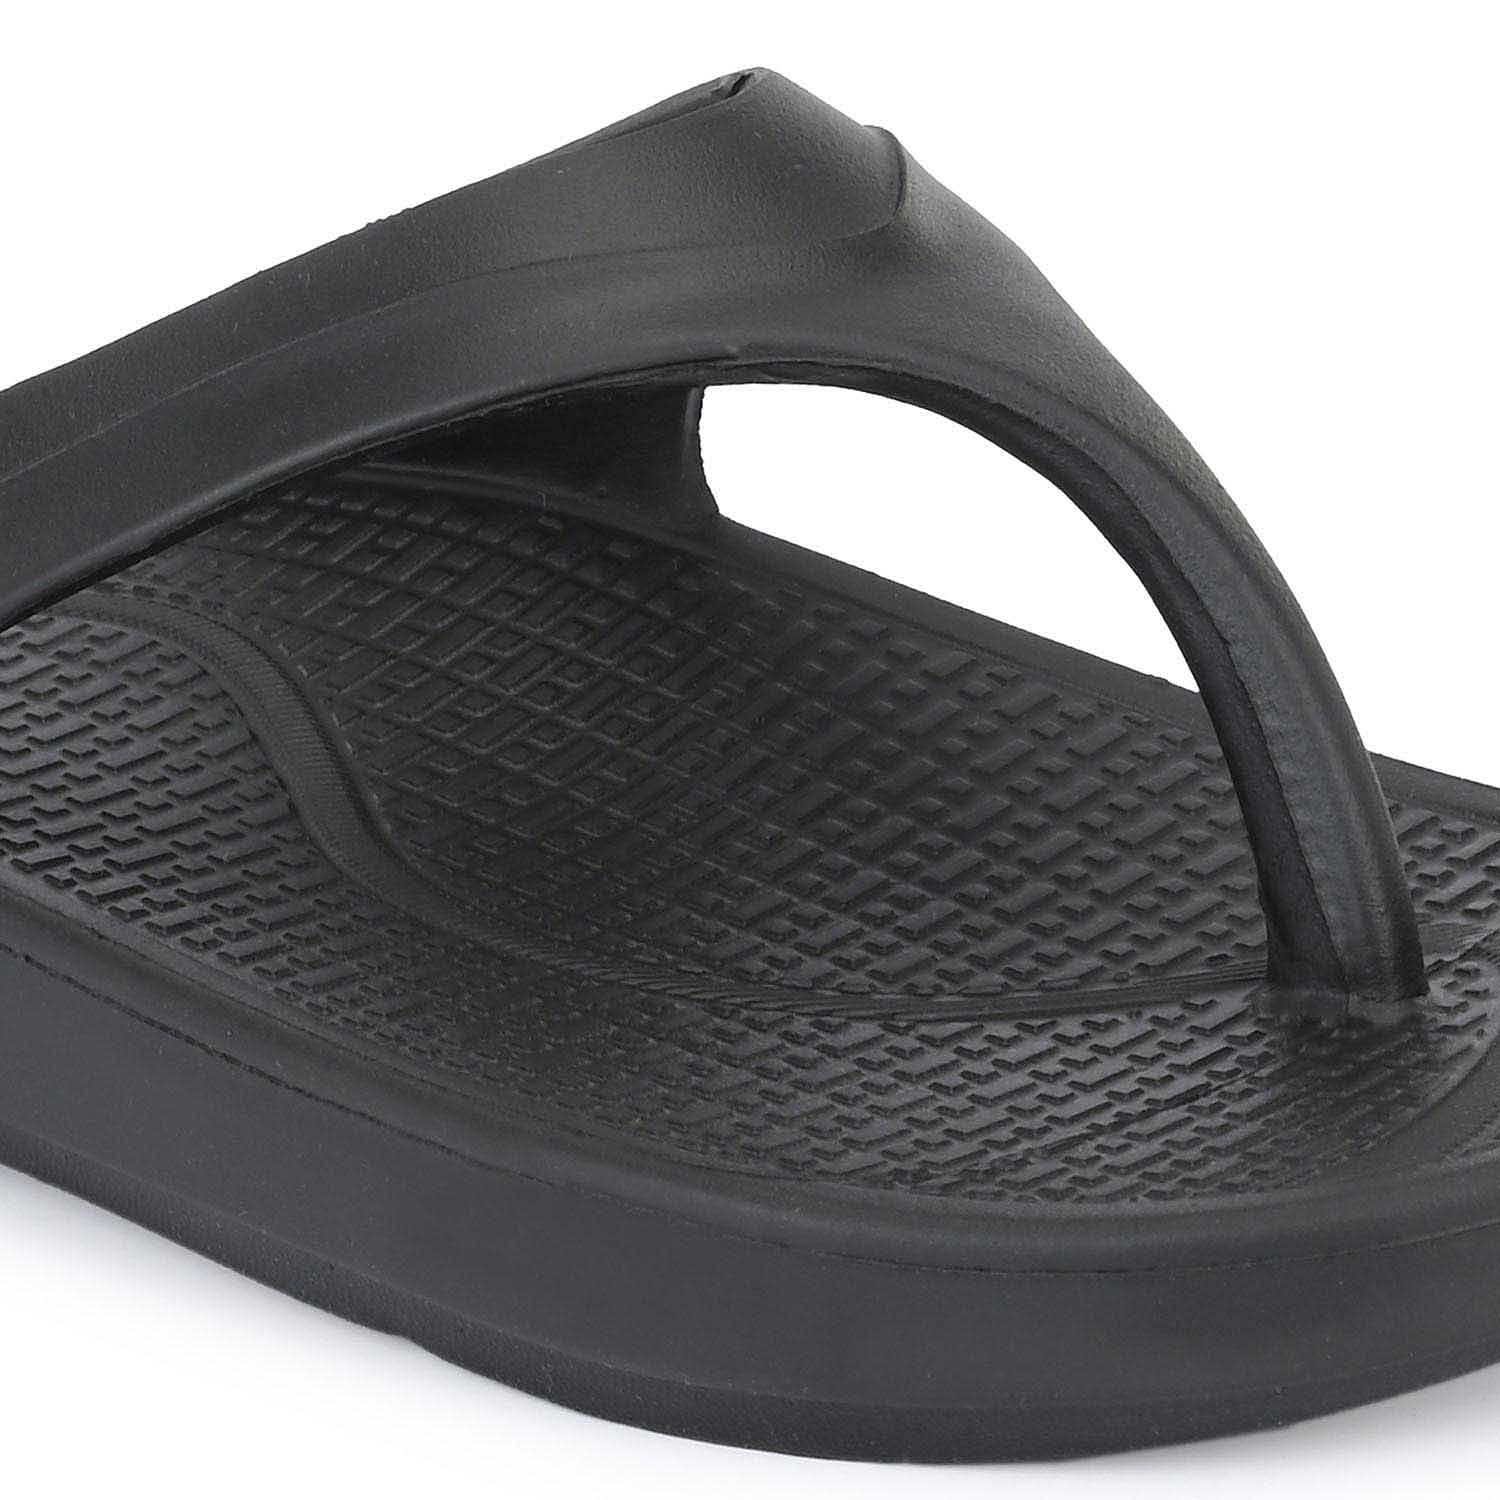 Pair-it Ladies Slippers- 302-black